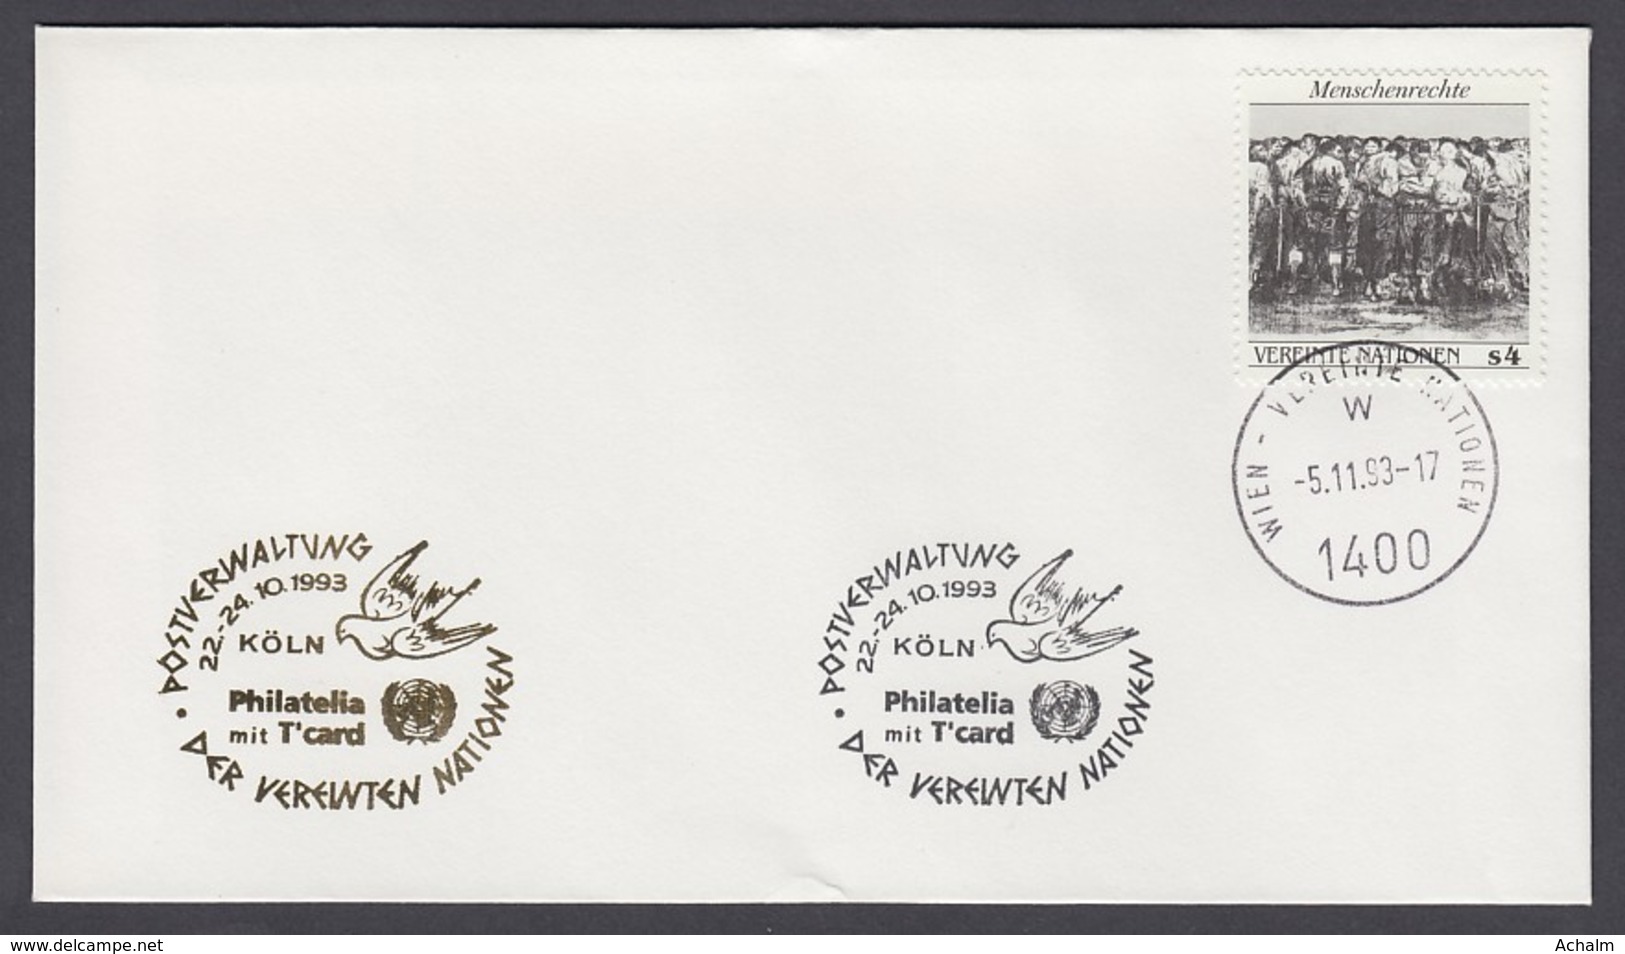 UNO Wien-UN Vienna - Beleg 1993 - MiNr. 96 - Gold-Sonderstempel - Philatelia Mit T'card, Köln - UNO